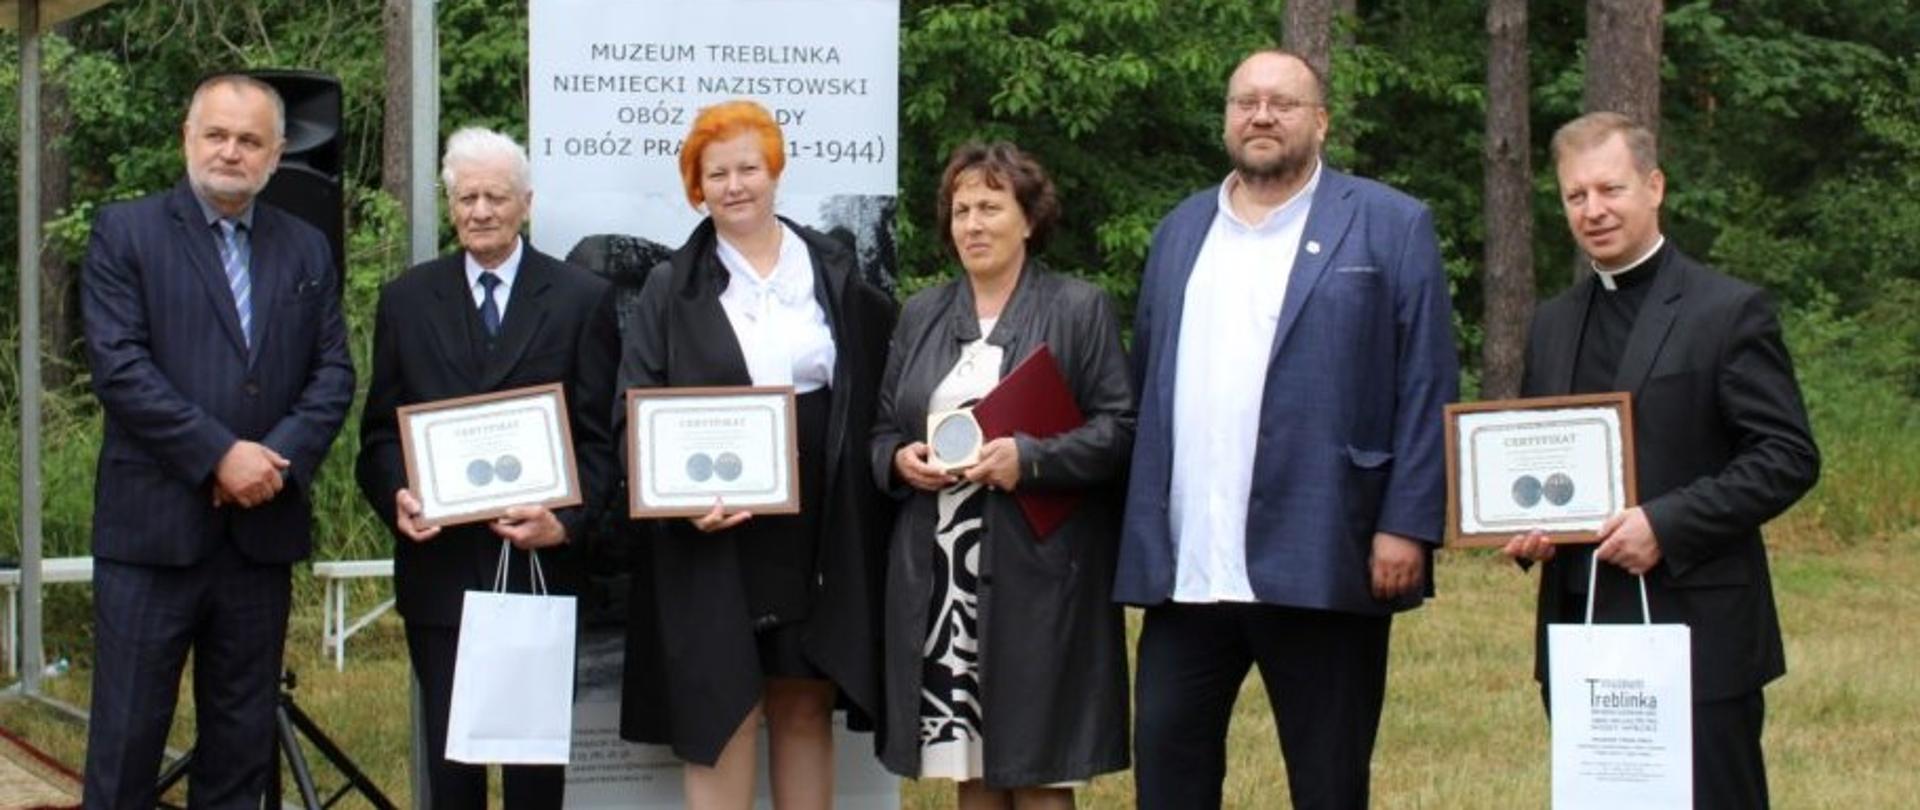 Zdjęcie grupowe na tle lasu osób oraz instytucji uhonorowanych medalem Zasłużony dla Muzeum Treblinka. Wraz z wyróżnionymi na zdjęciu dyrektor Muzeum.